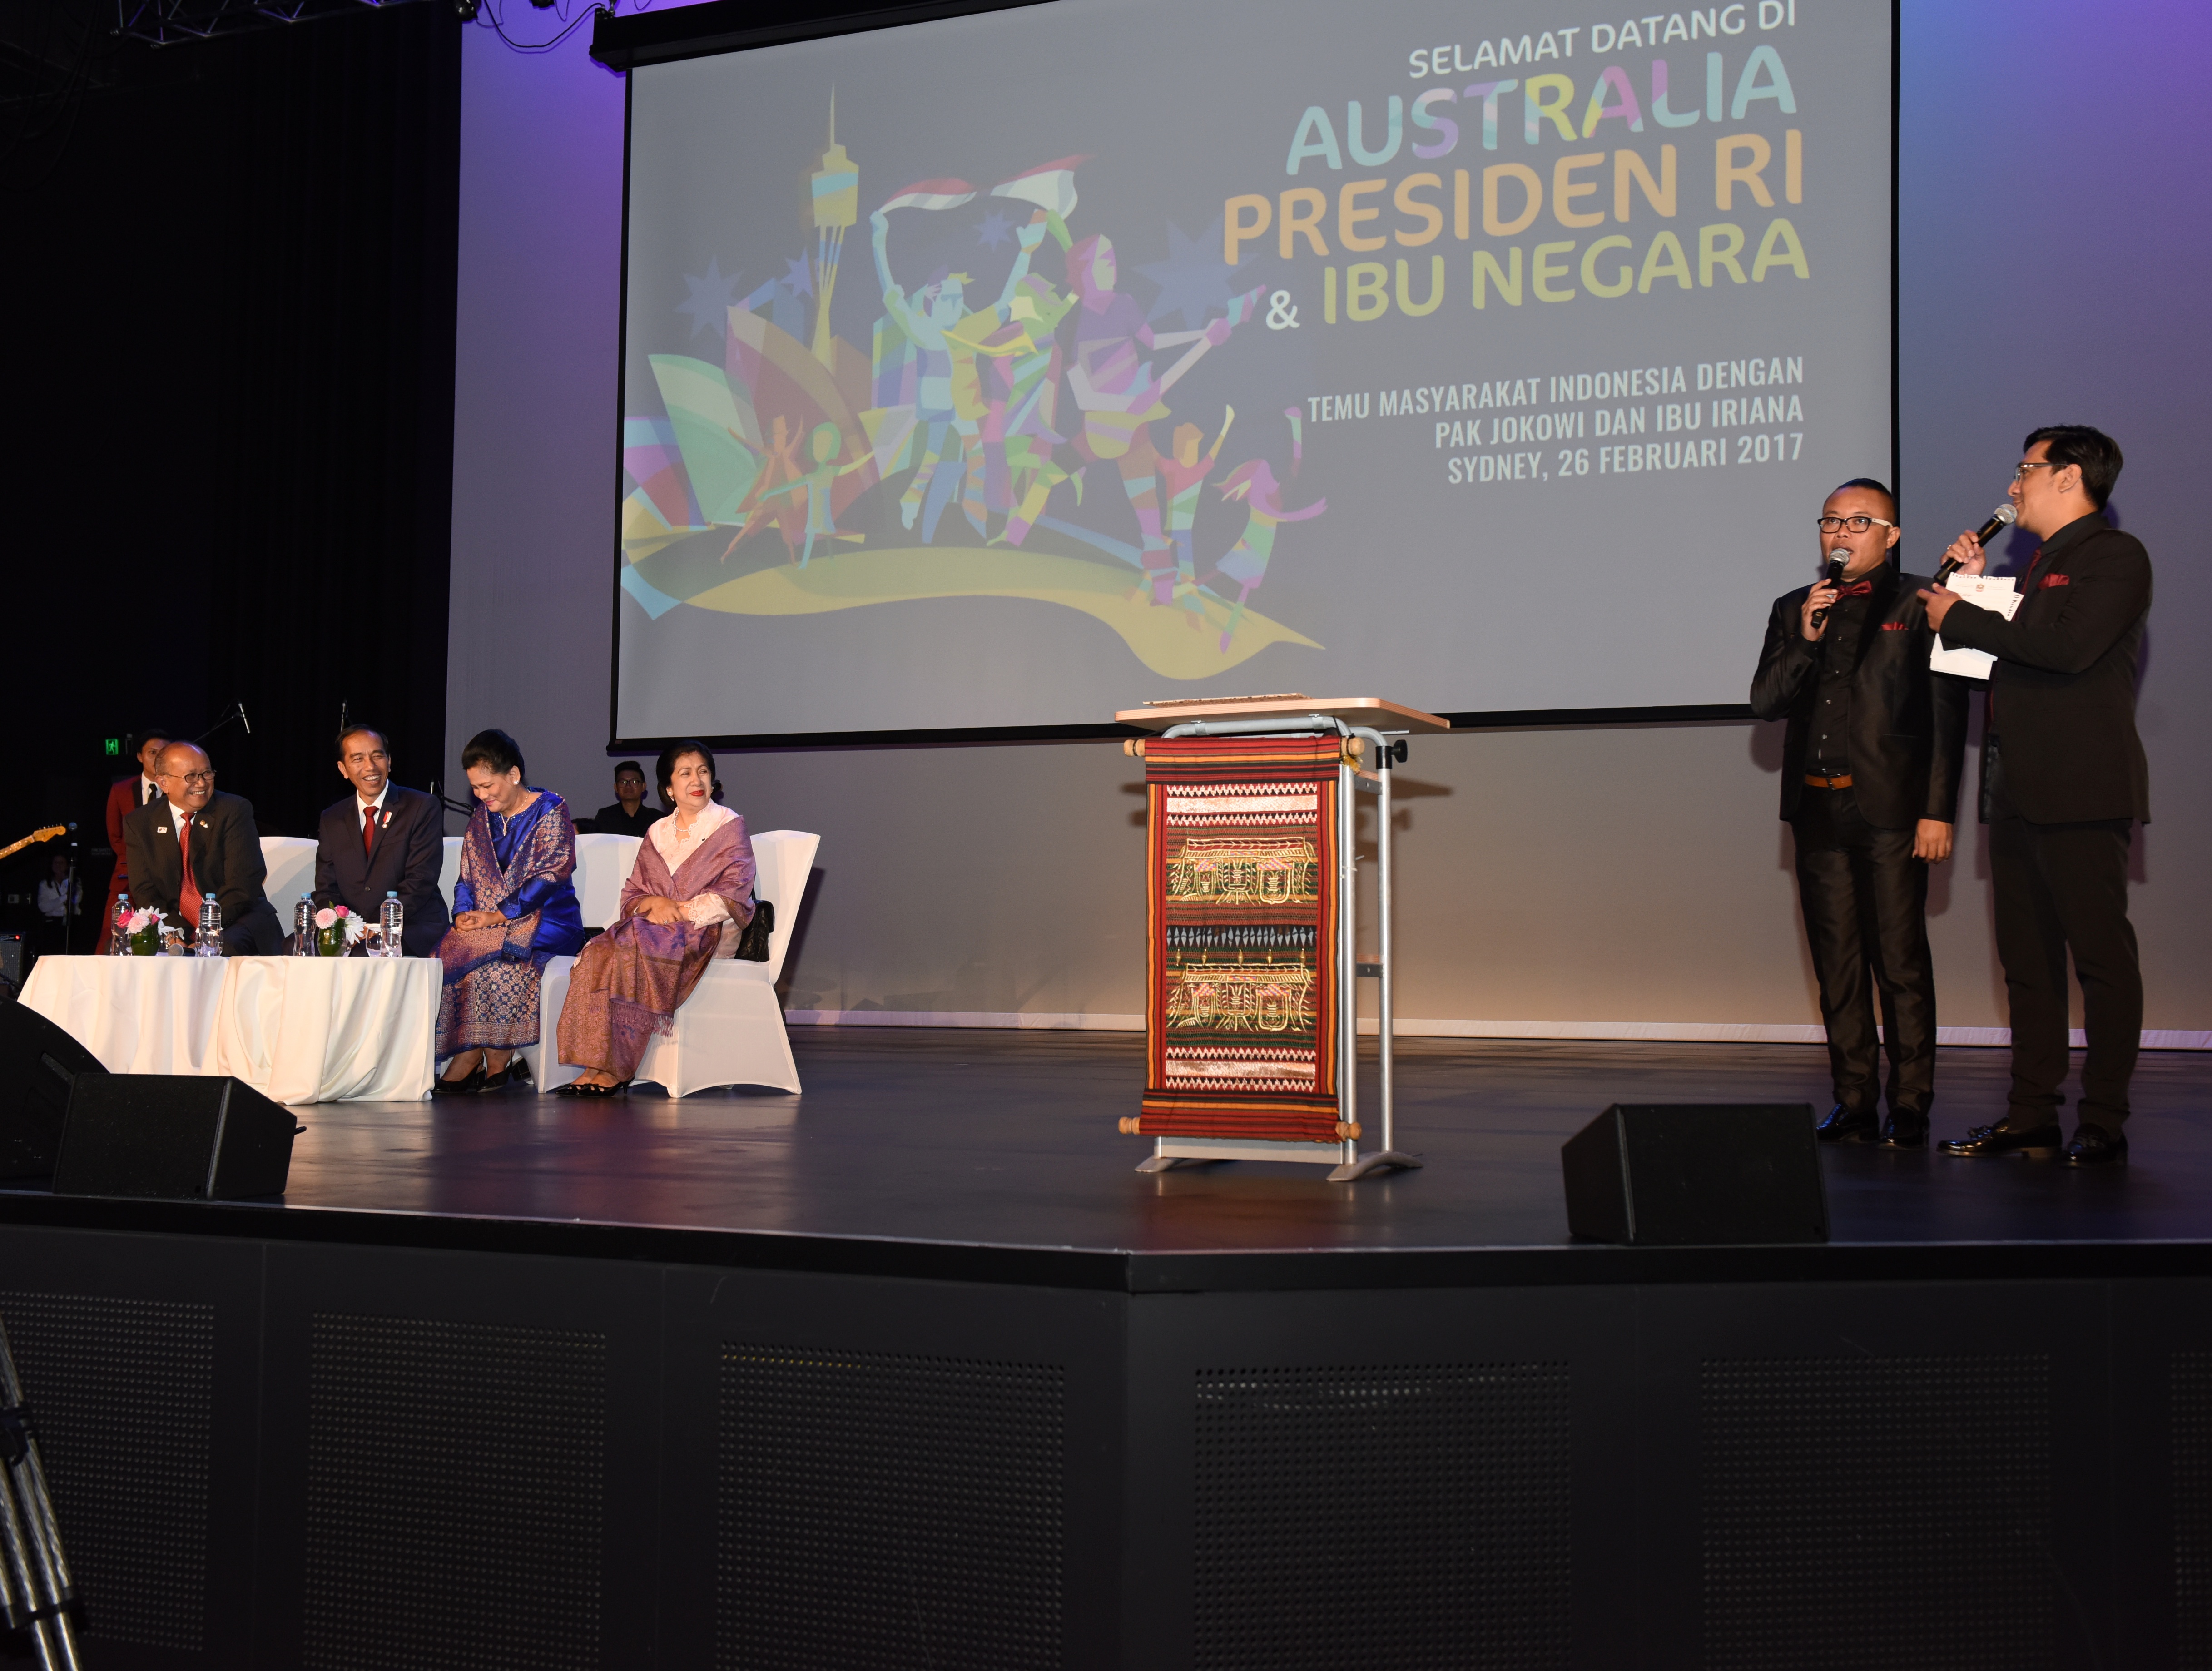 Presiden Jokowi didampingi Ibu Negara Iriana saat bertemu dengan warga Indonesia di Sydney, Australia, Minggu (26/2). (Foto: Humas/Anggun) 